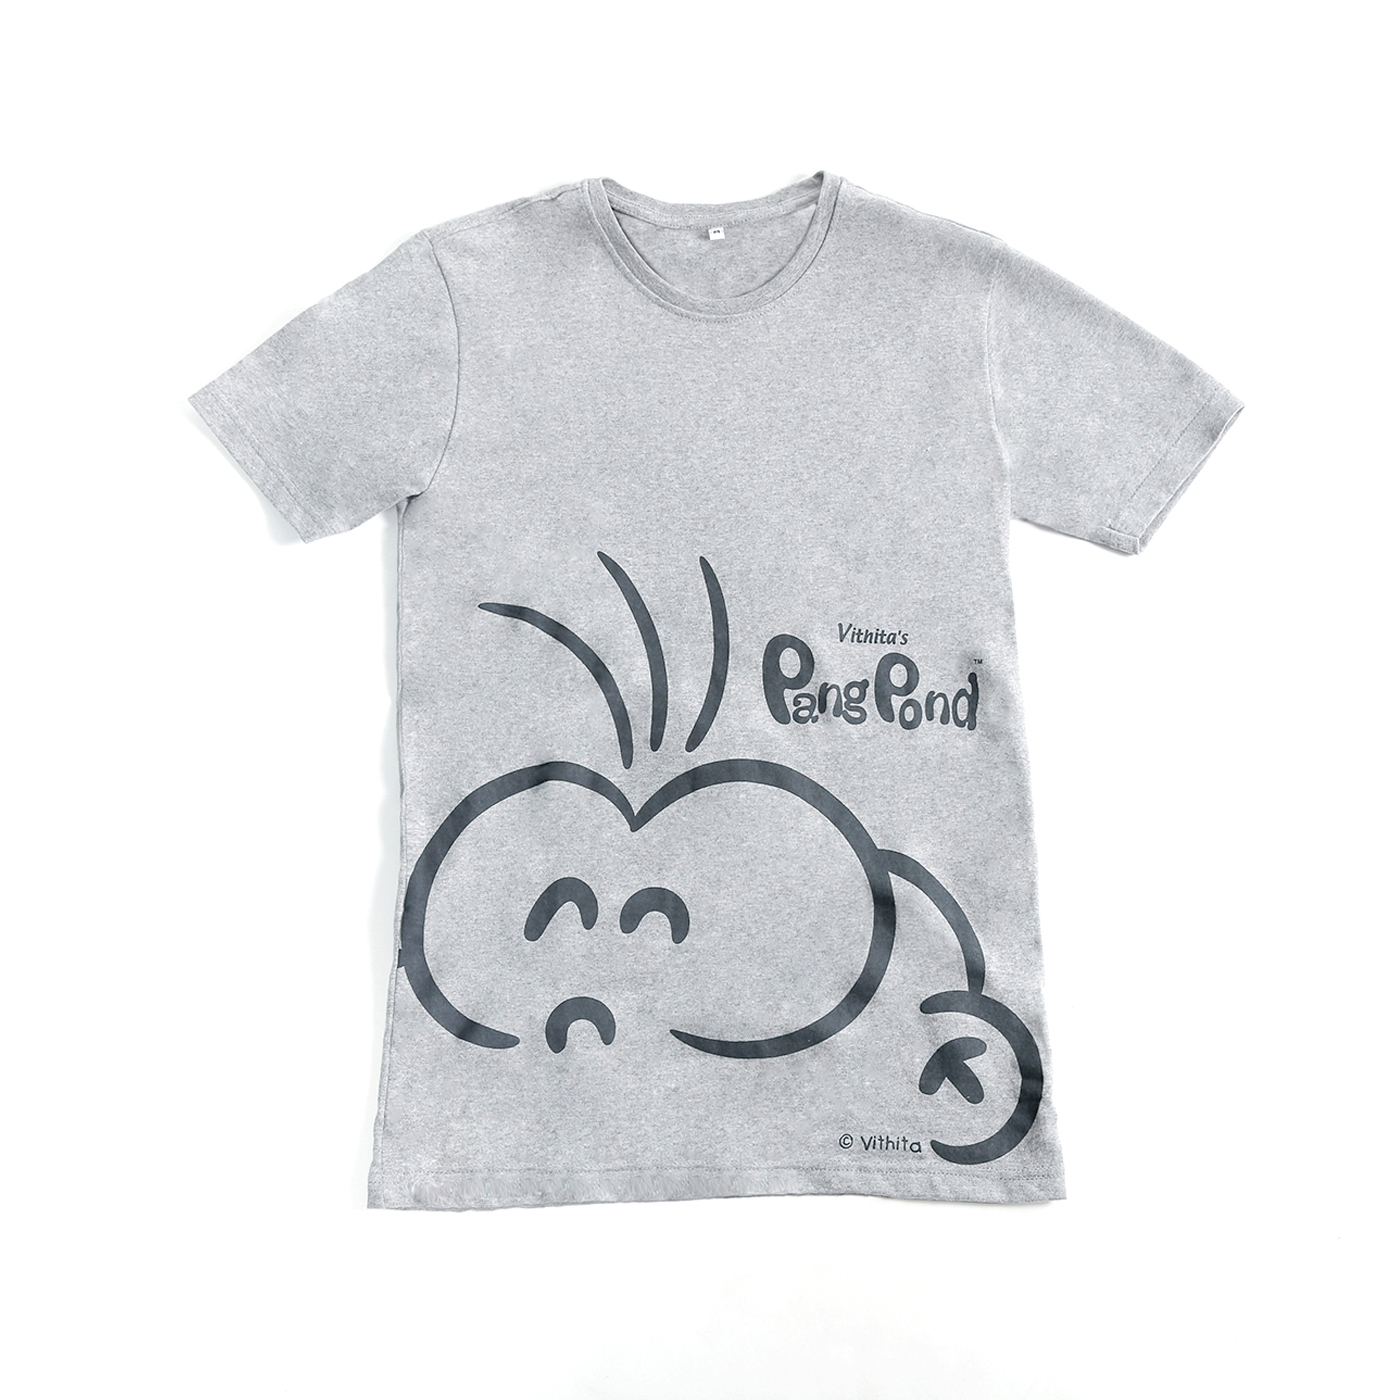 PangPond T-shirt: Gray [XL]